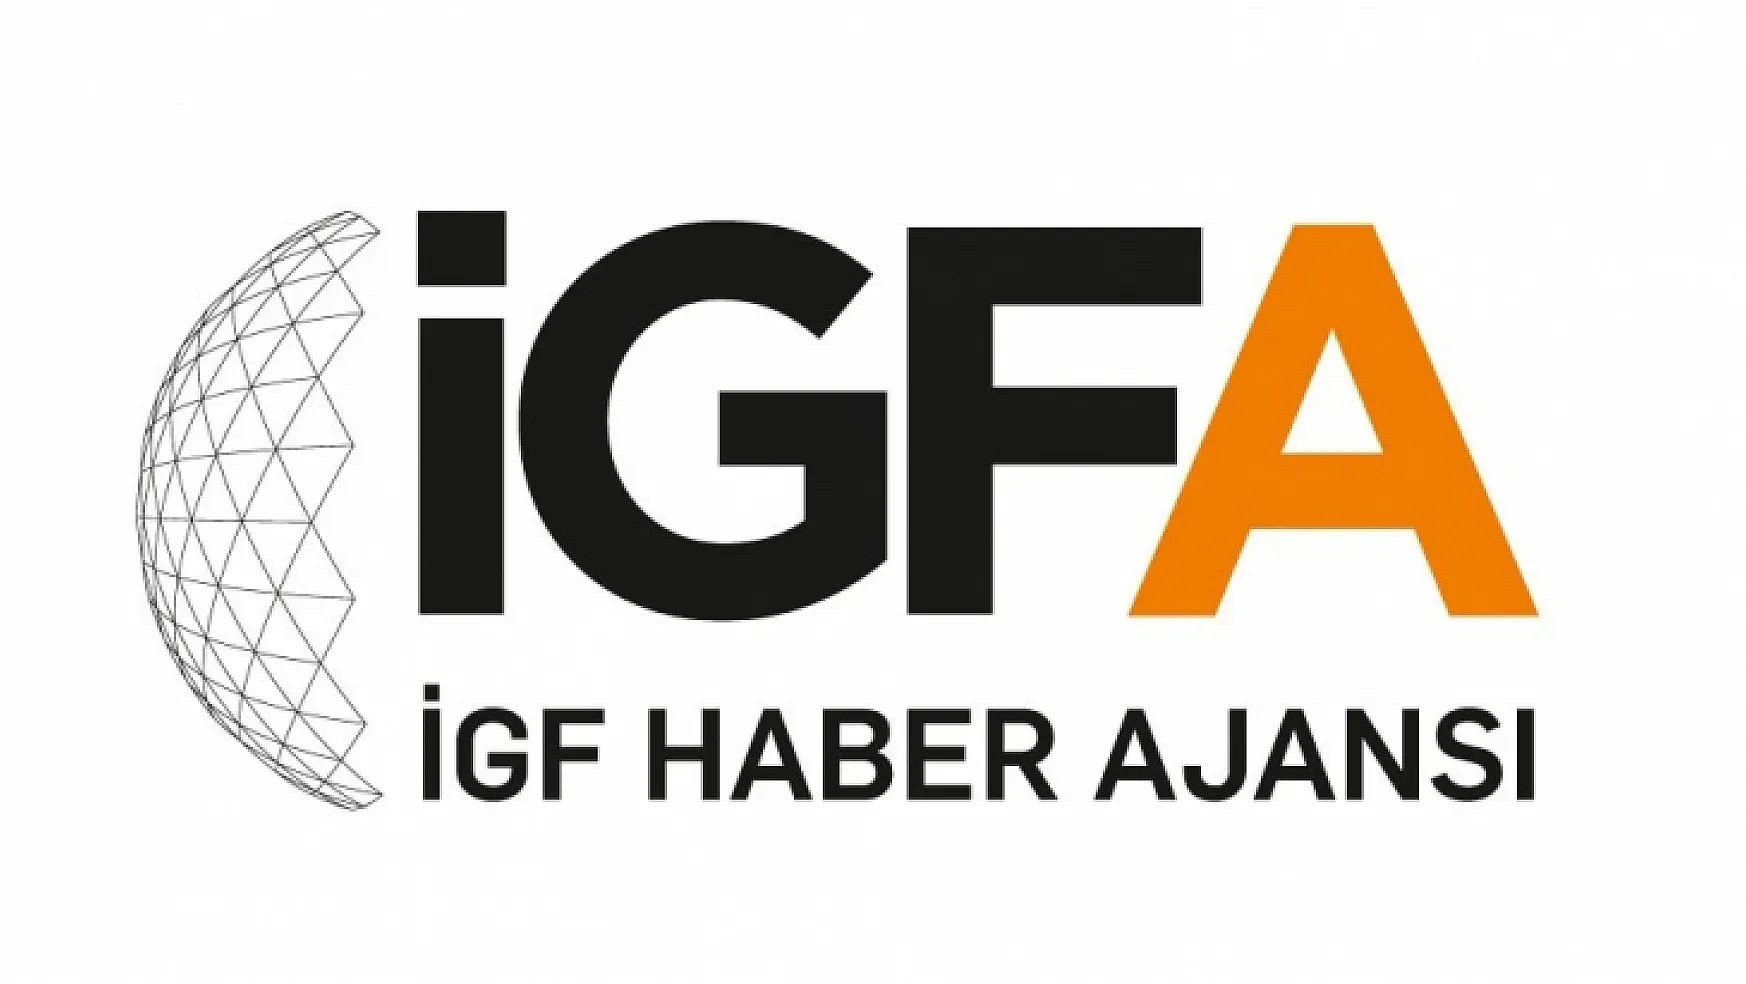 İGF Haber Ajansı (İGFA) yayın hayatına başladı